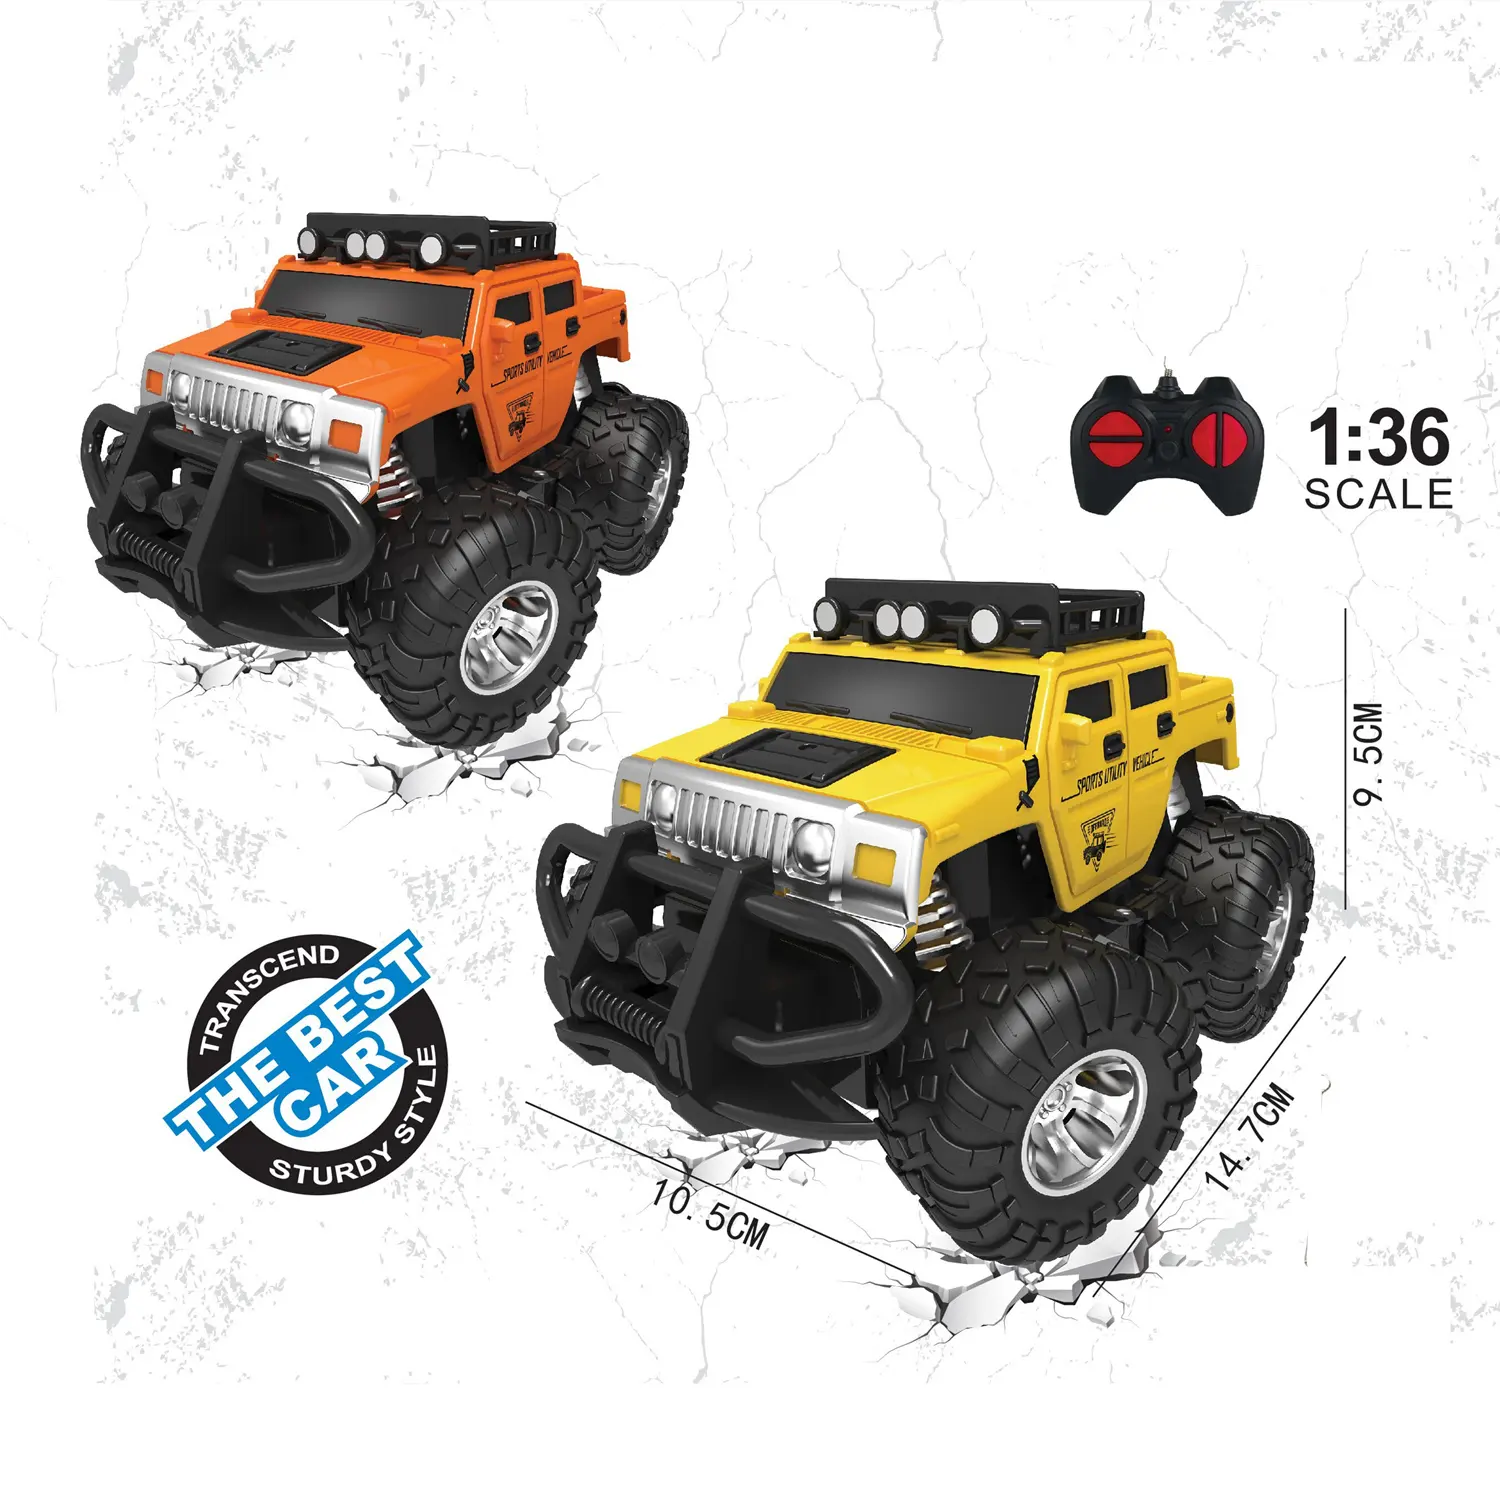 Мини-Радиоуправляемый Дрифтерный автомобиль 1: 36 Jeep Wrangler с дистанционным управлением машинка игрушки Человек-паук супергерой боевой автомобиль 4x4 высокоскоростной внедорожный джип